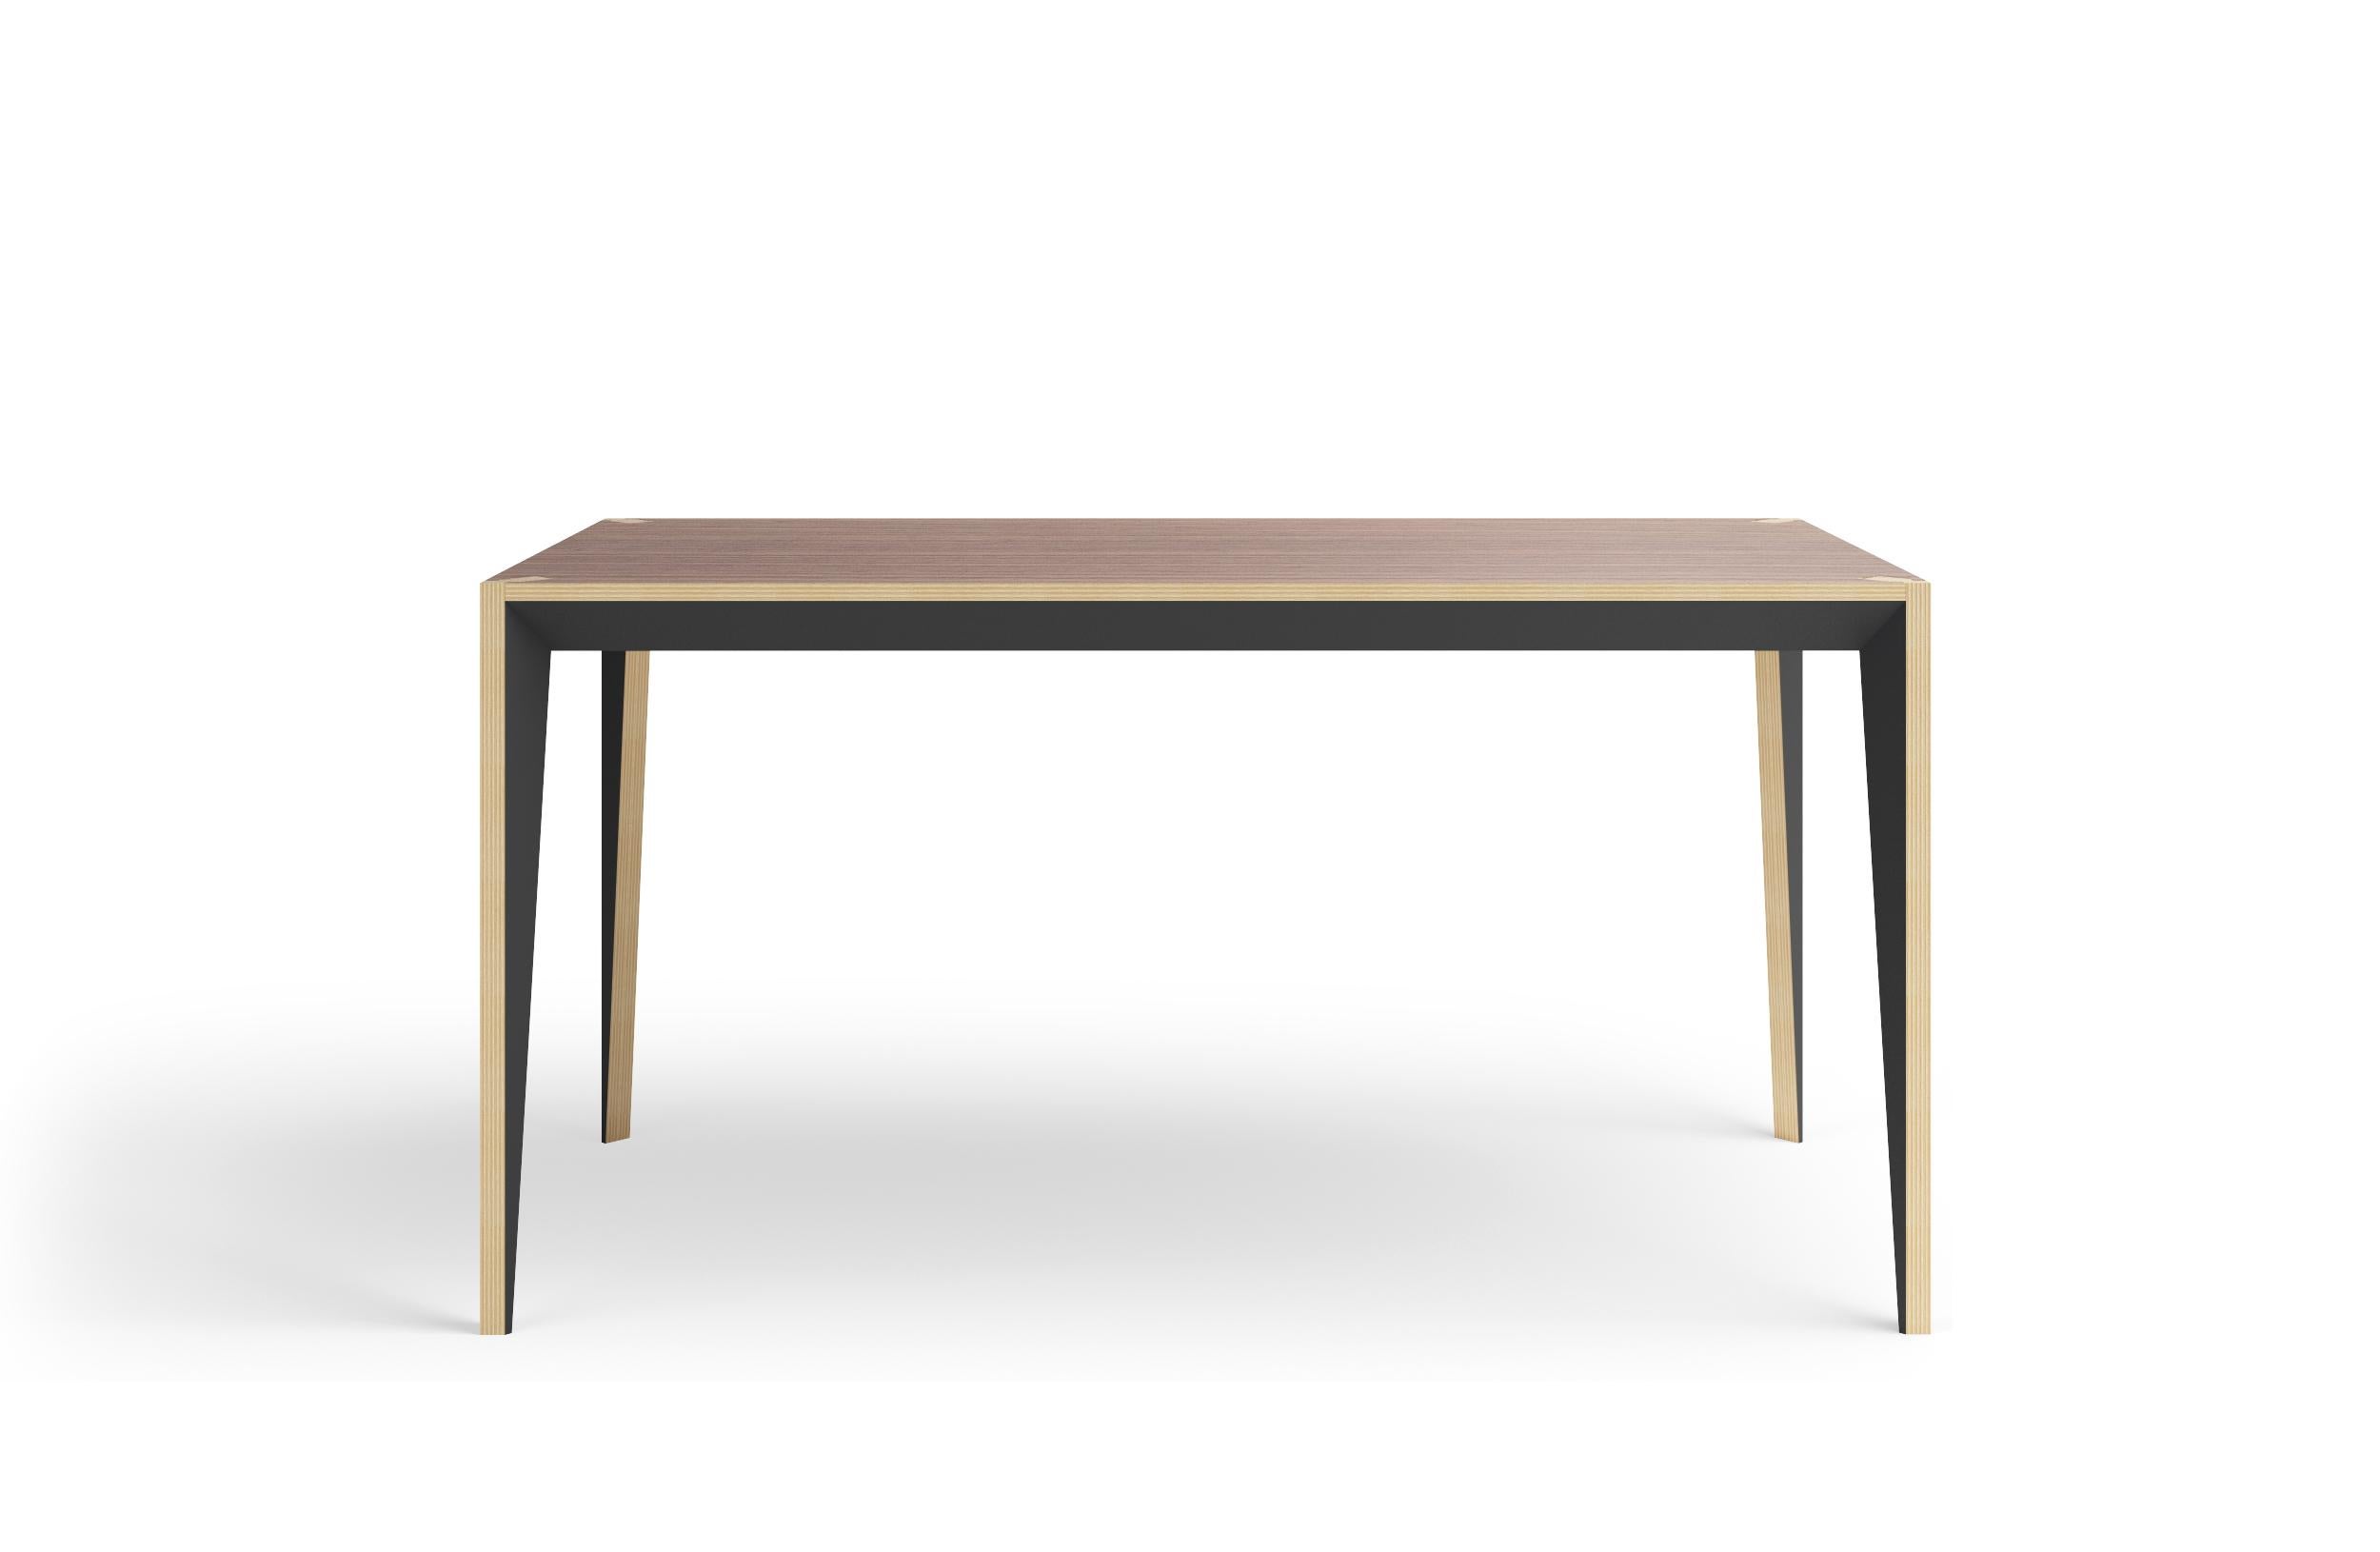 Die facettierte Geometrie des MiMi-Tisches, die klare Linien mit warmen Materialien verbindet, schafft ein schlankes, elegantes Profil, das von lackierten Oberflächen unterbrochen wird, die das Licht einfangen. Dieses moderne und anmutige Design